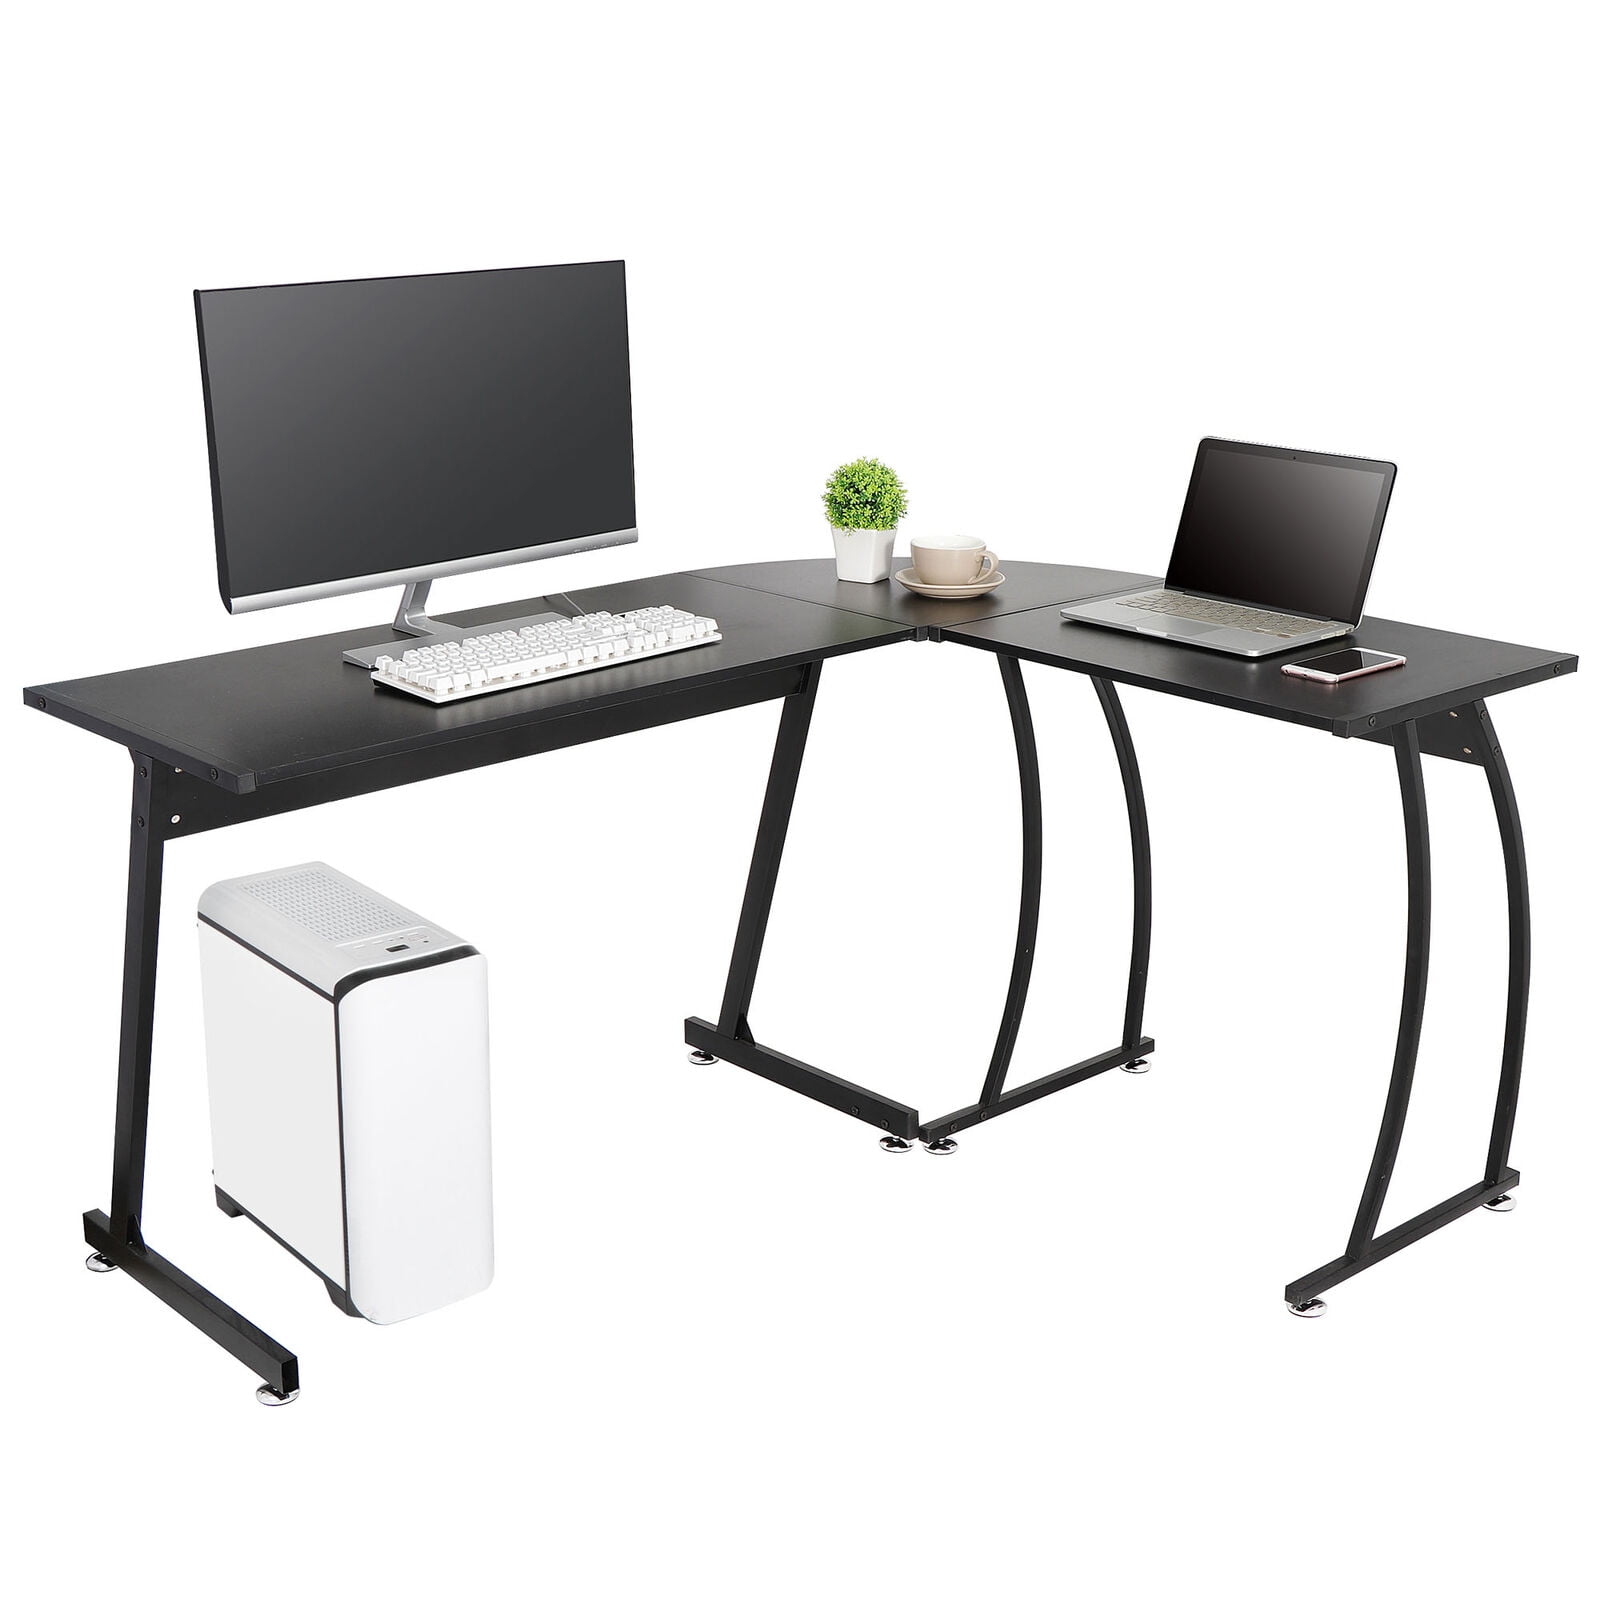 Zenstyle L Shaped Desk Corner Computer, L Shaped Computer Desks For Home Office